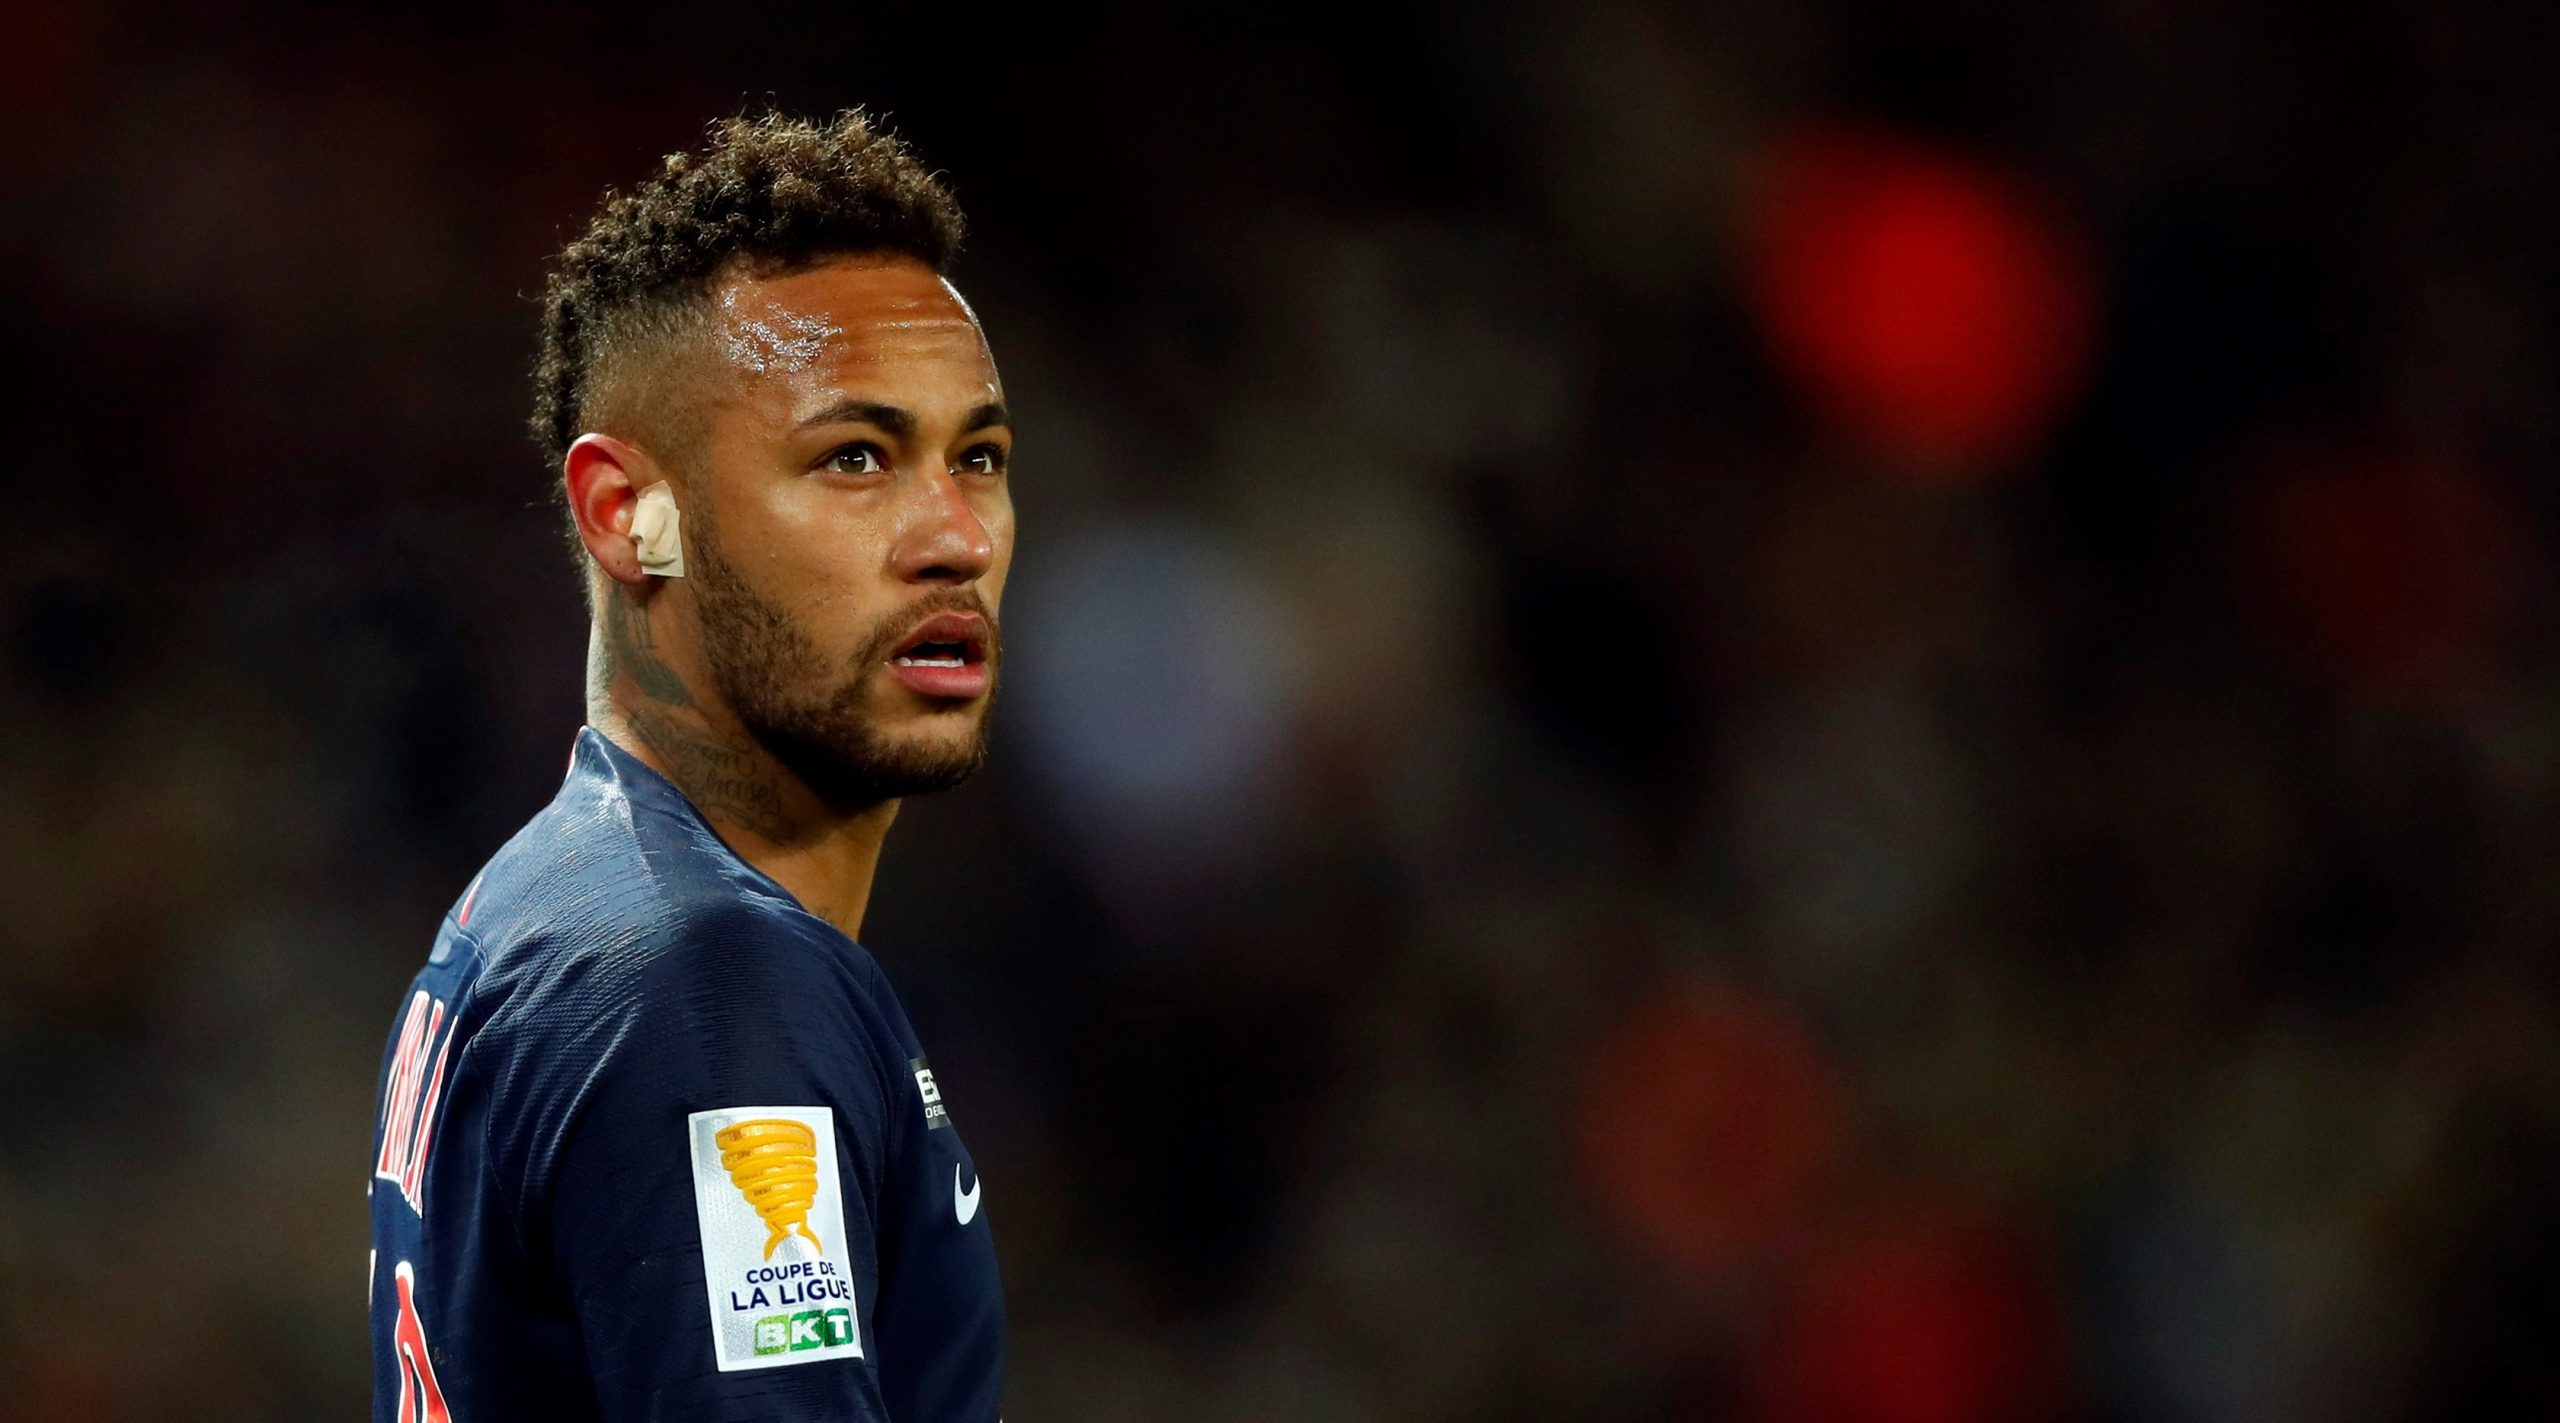 Neymar es denunciado por insultos homofóbicos a su joven padrastro